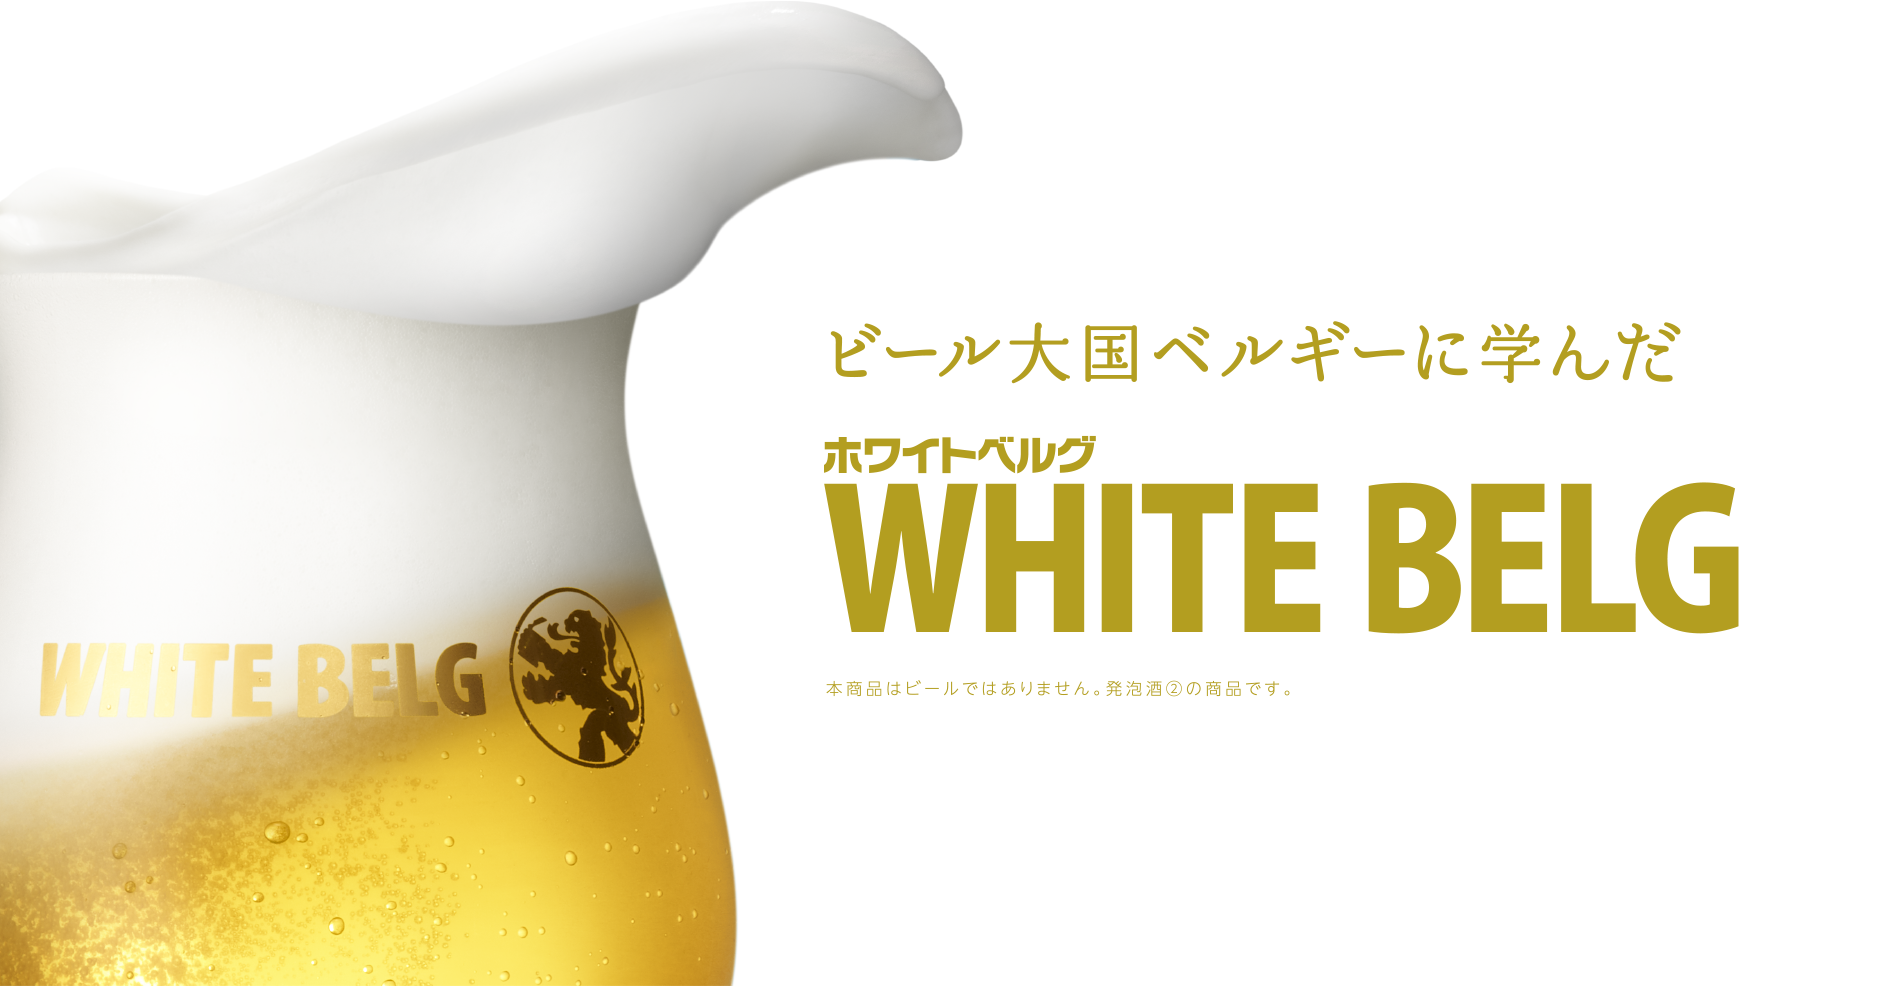 ビール大国ベルギーに学んだホワイトベルグ ※本商品はビールではありません。リキュール（発泡性）①の商品です。